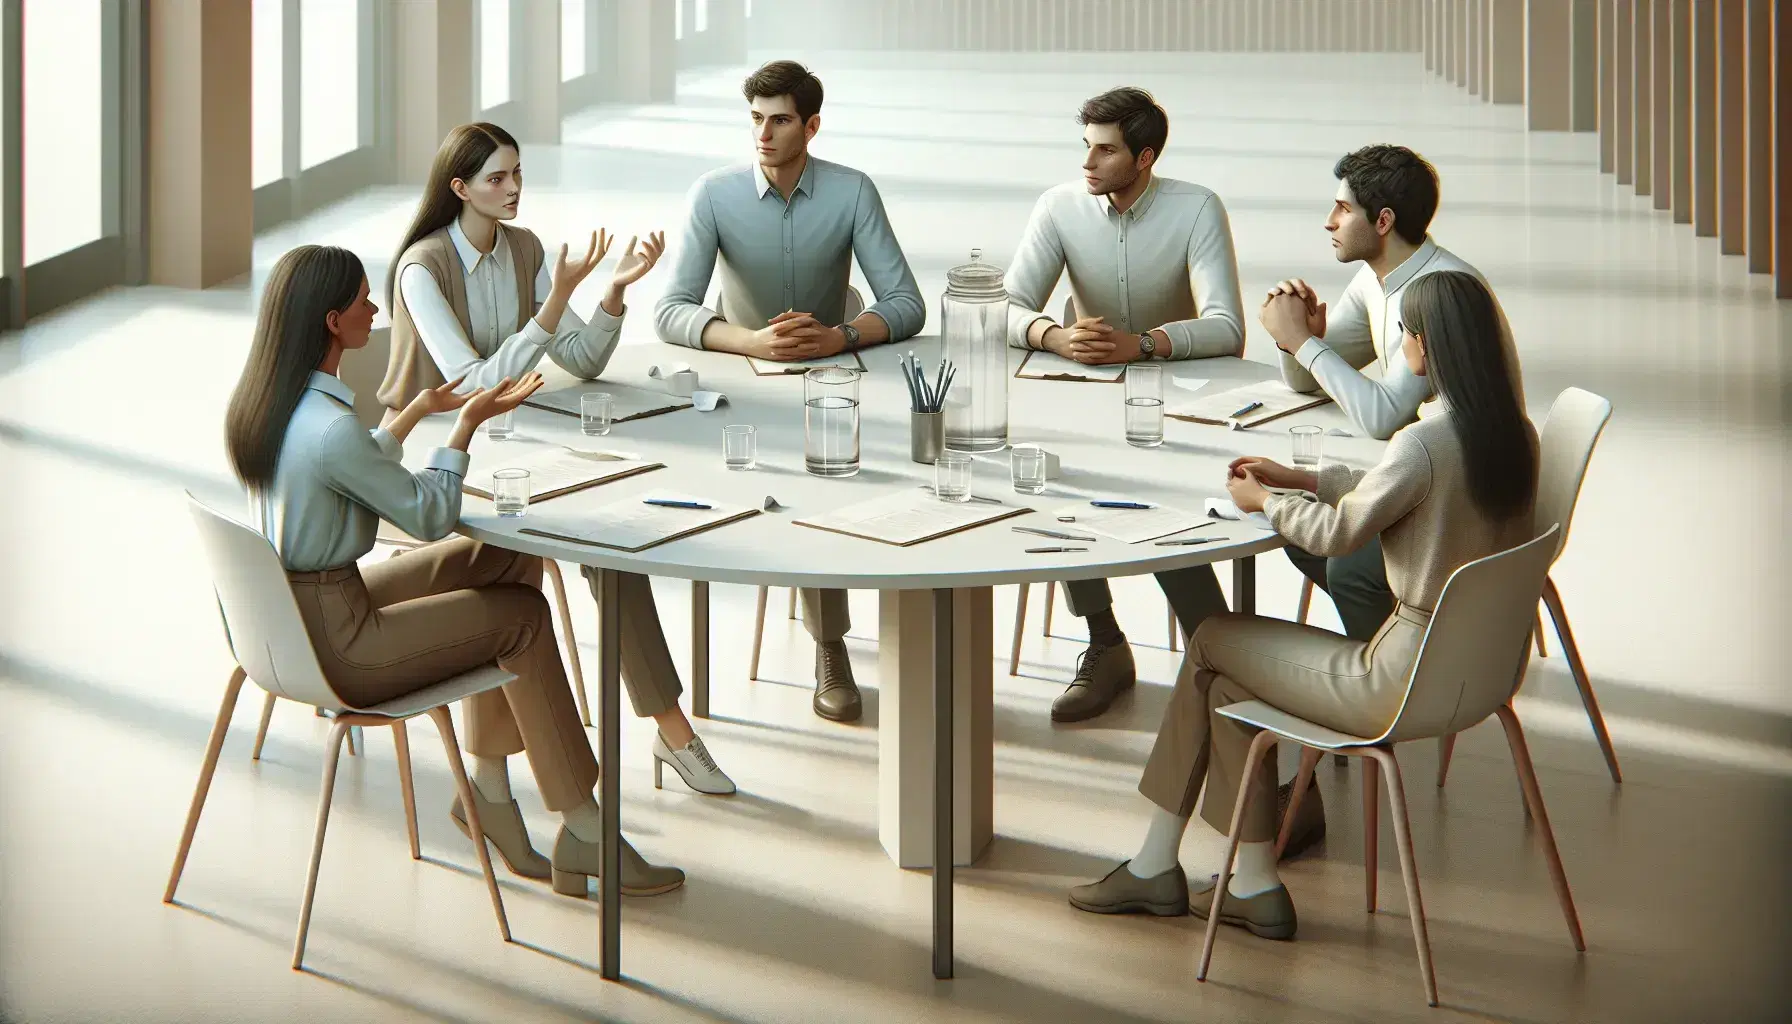 Gruppo multietnico di cinque professionisti in abbigliamento smart-casual impegnati in una riunione attorno a un tavolo rotondo con documenti e bicchieri d'acqua.